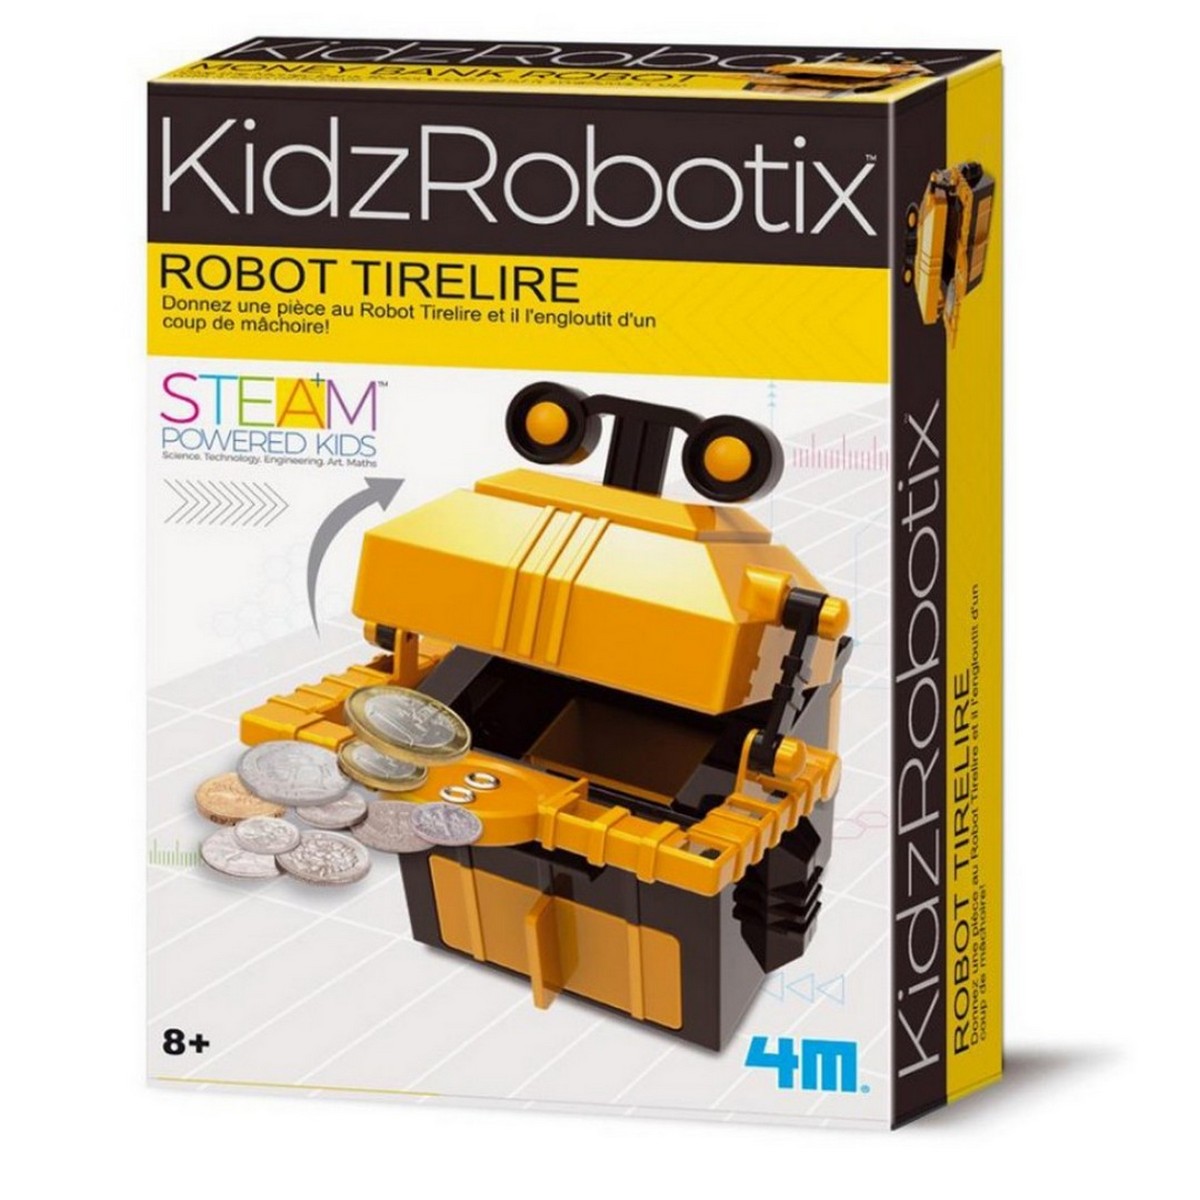 Robot tirelire kidzRobotix